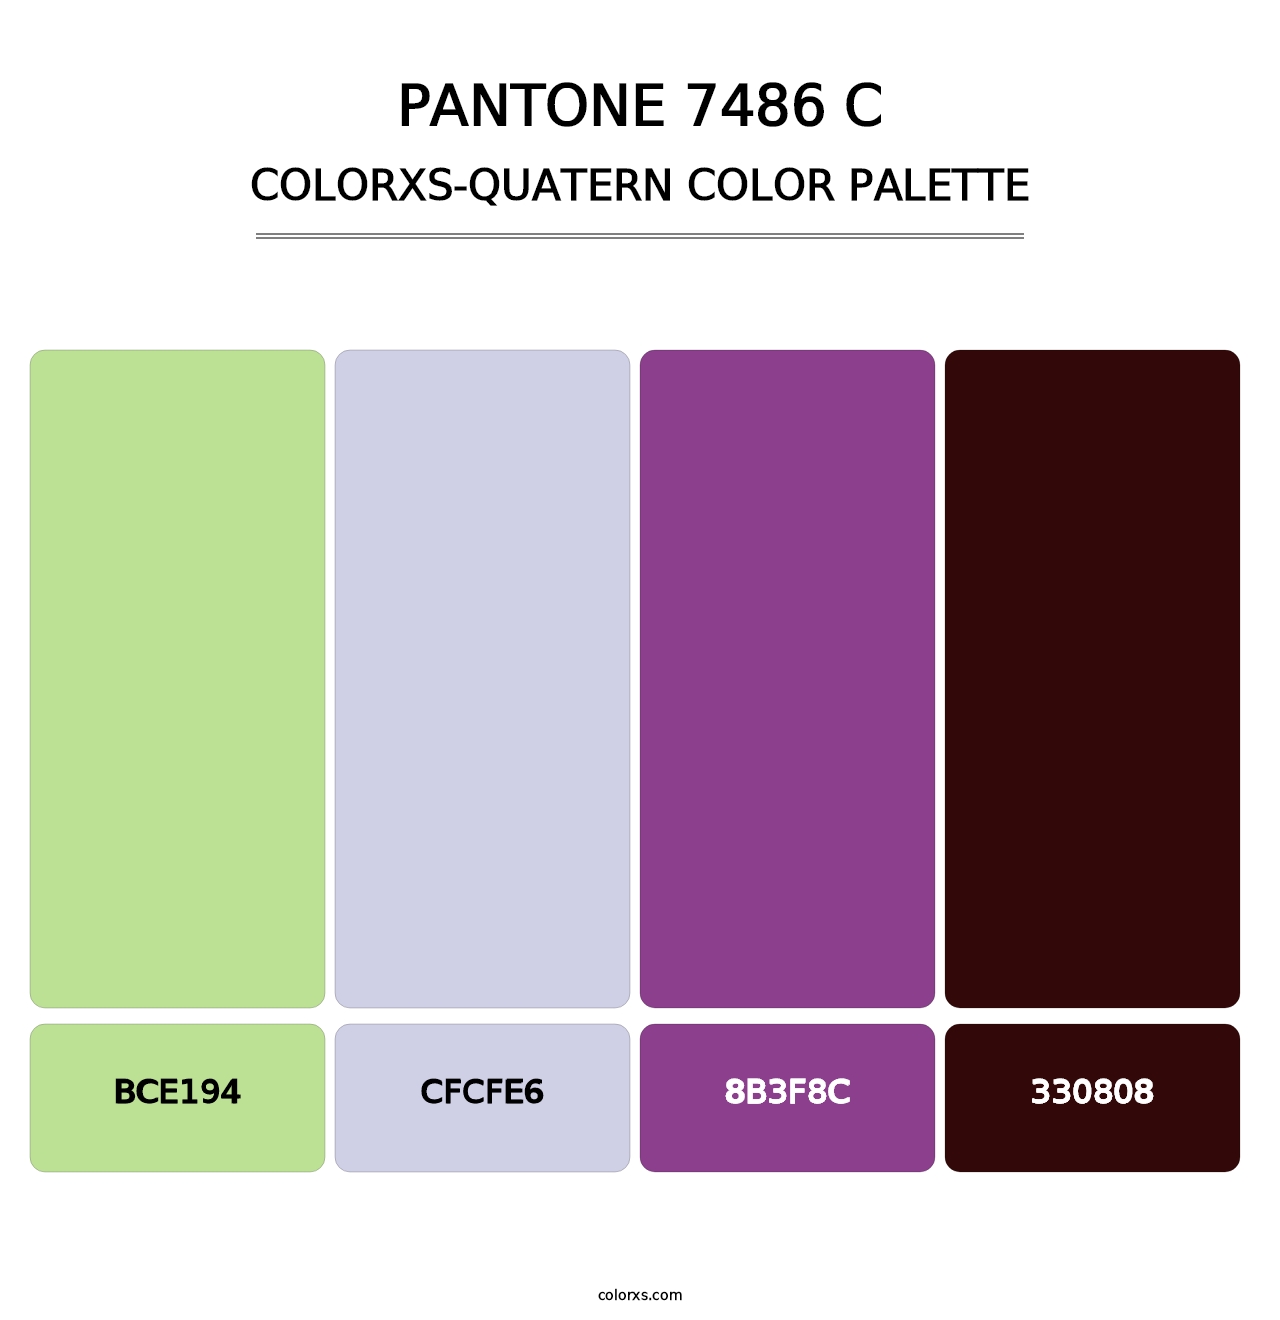 PANTONE 7486 C - Colorxs Quatern Palette